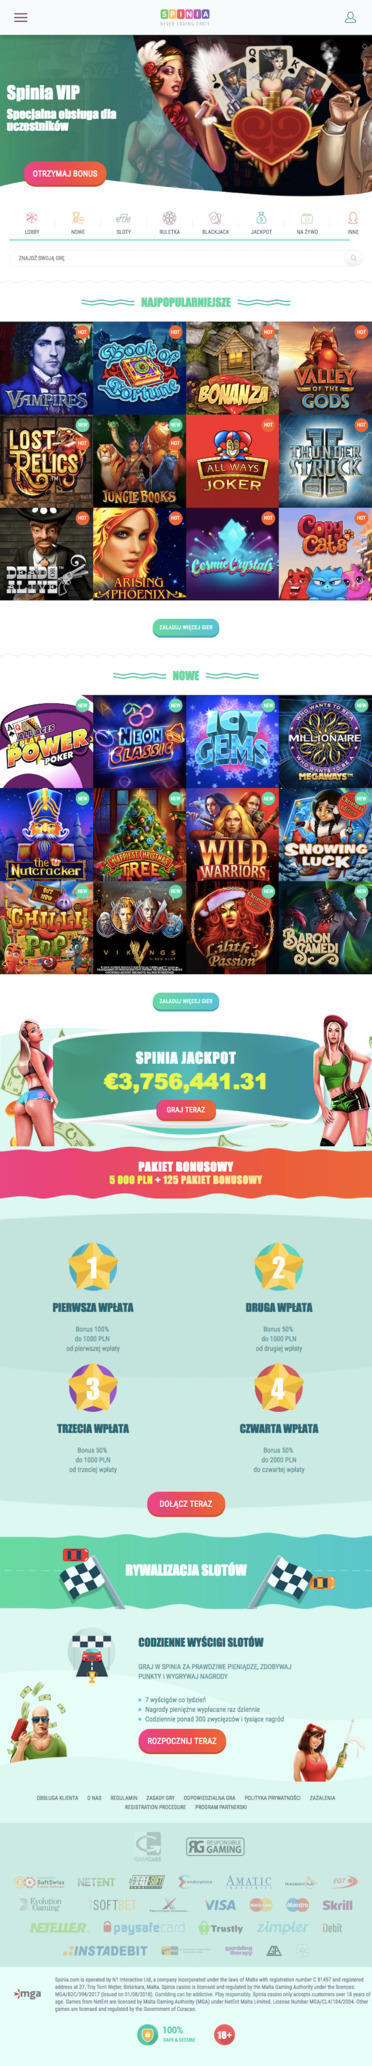 strona główna kasyna internetowego Spinia